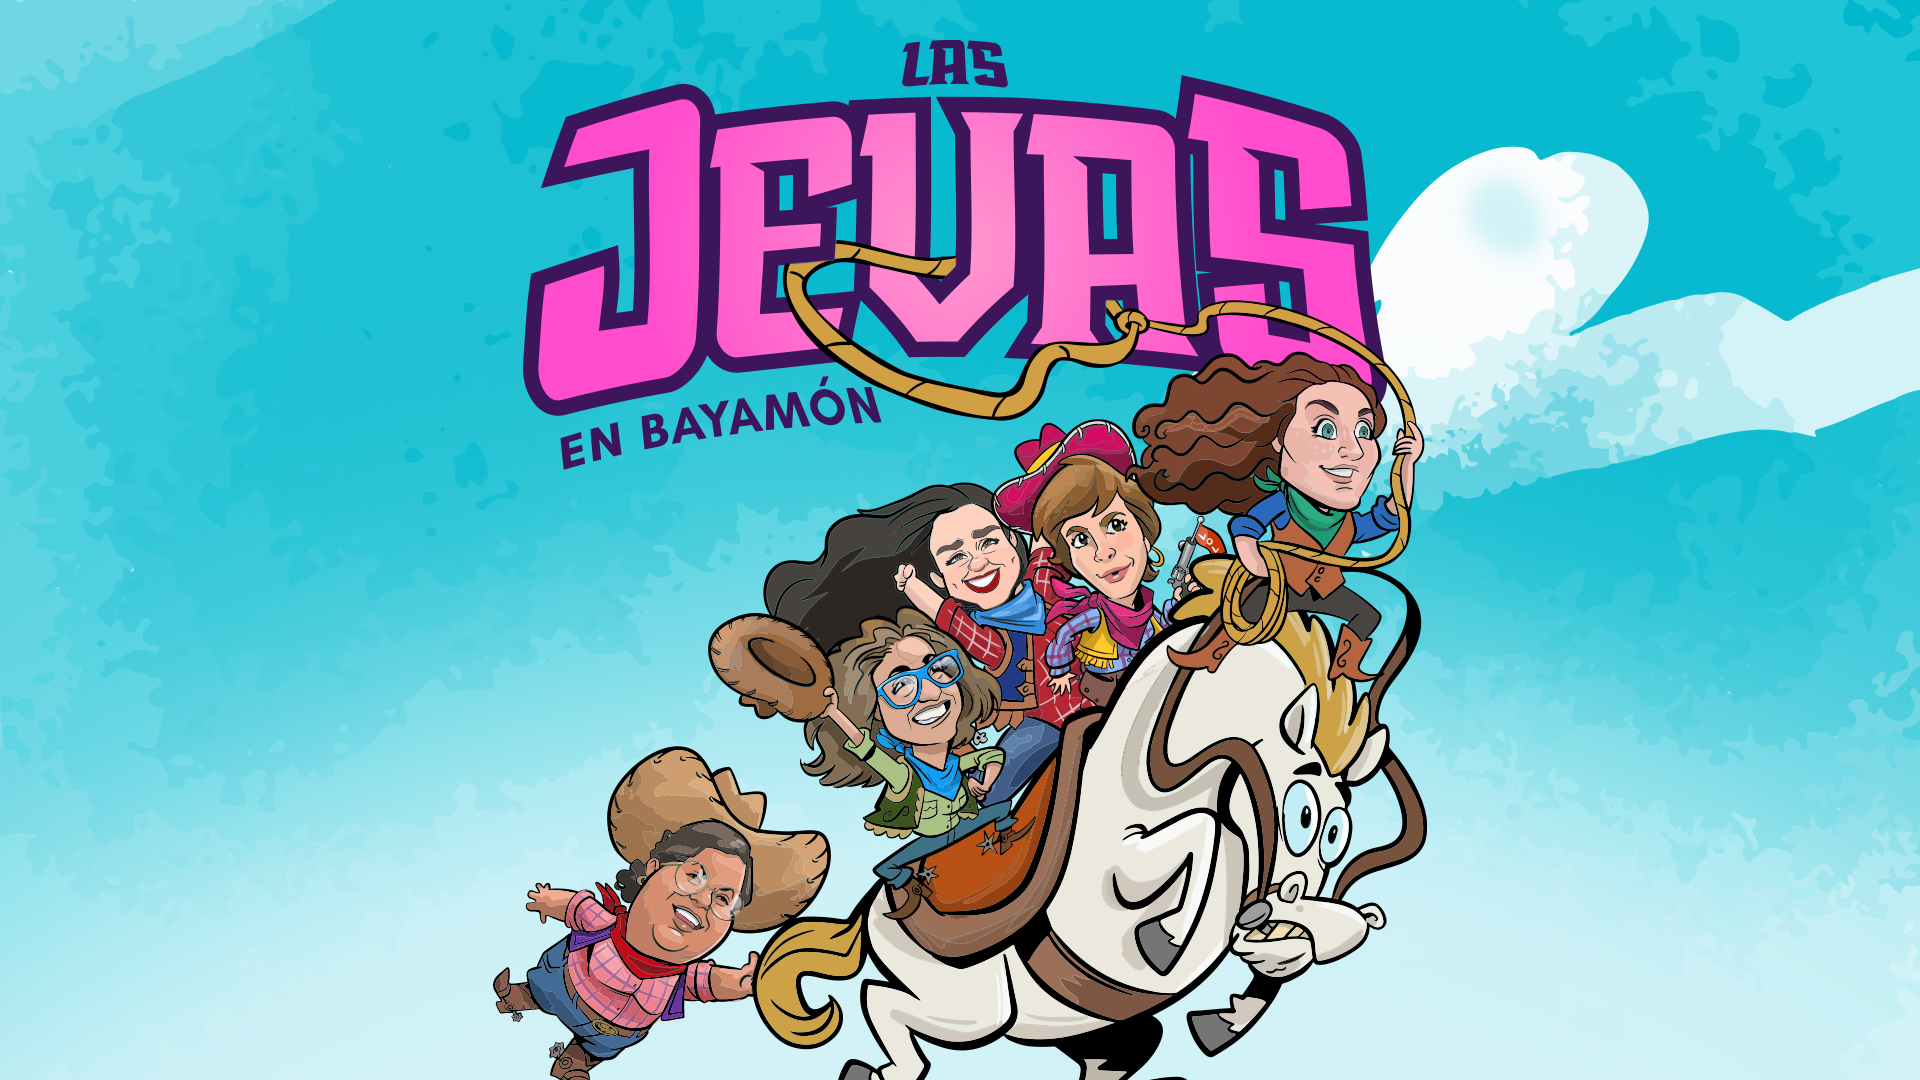 Las Jevas de Teatro Breve se presentan en Bayamón